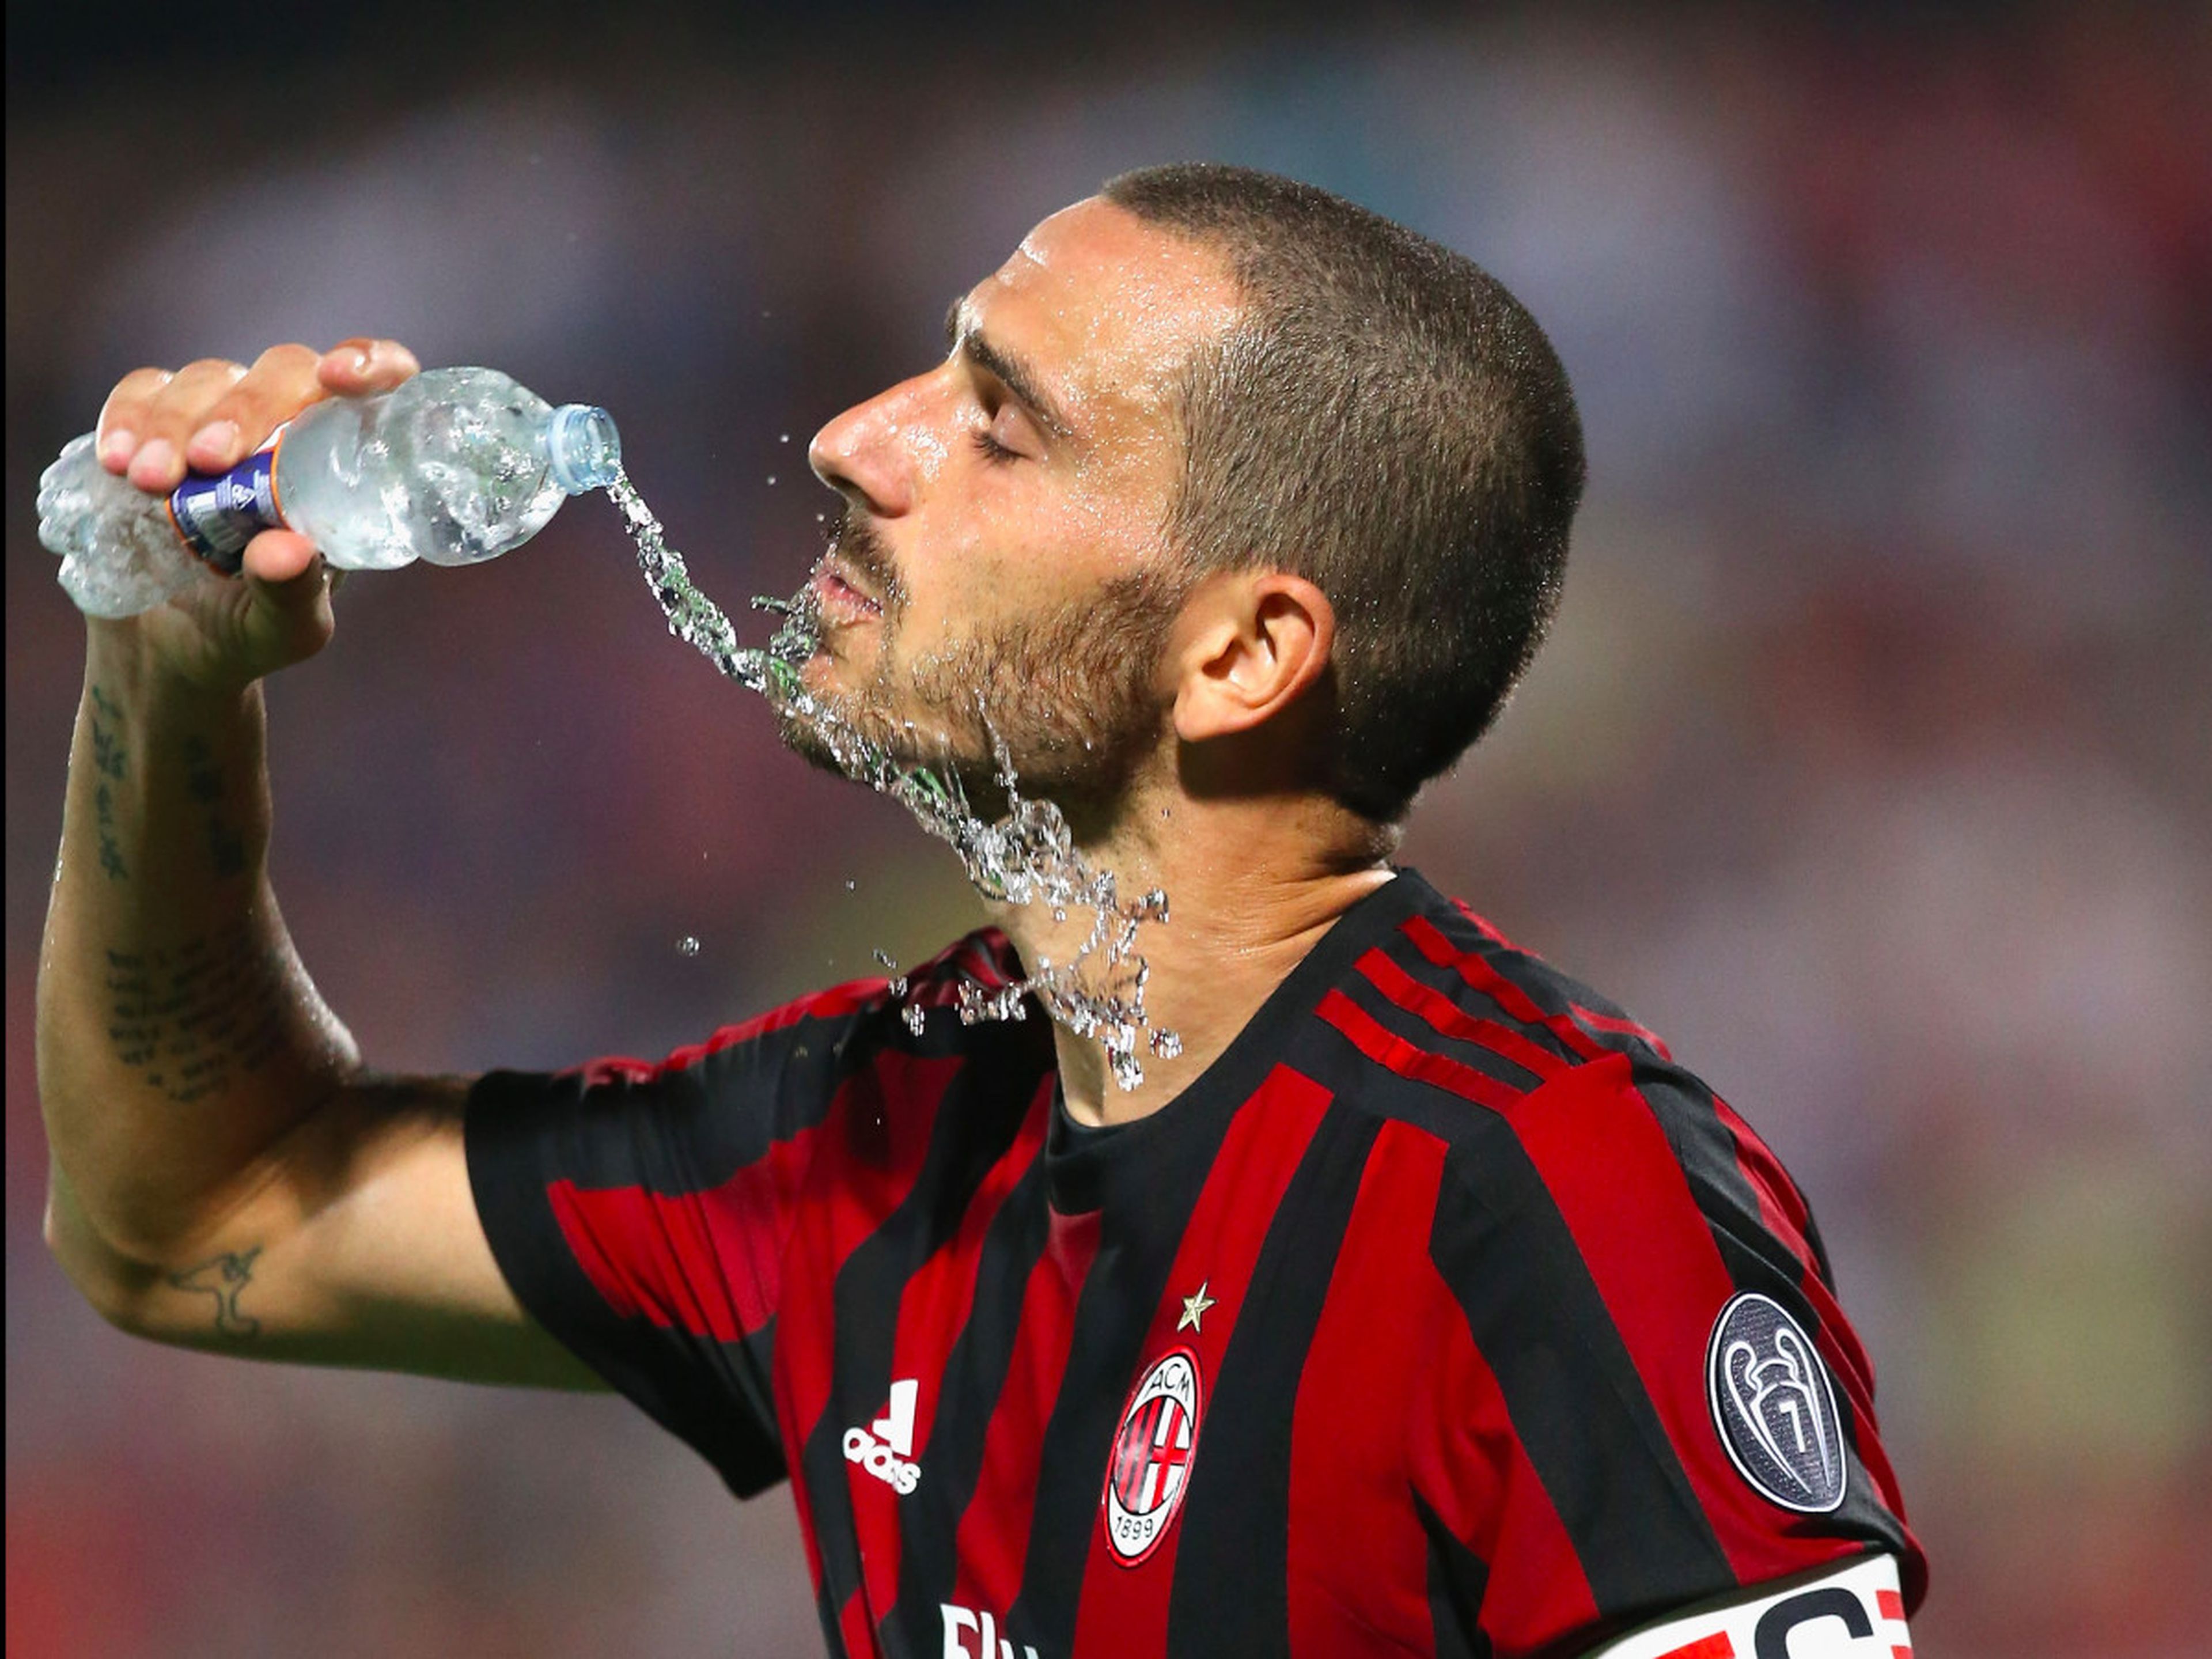 El jugador de fútbol Leonardo Bonucci del AC Milan bebe agua en un partido.